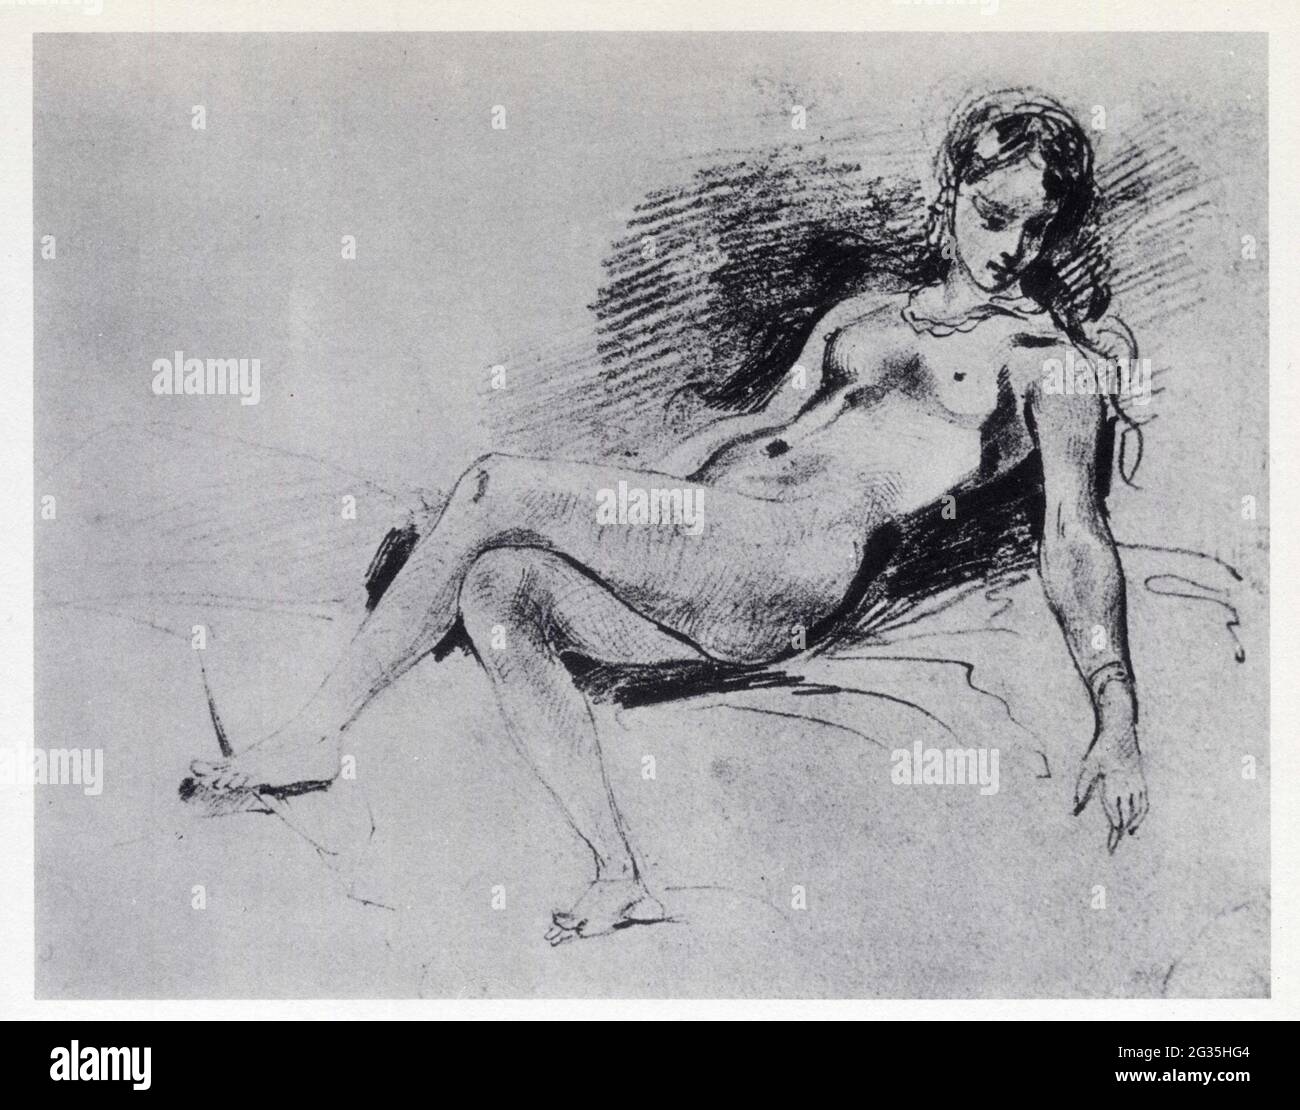 Eugène Delacroix. Odalisque couchée, étude pour La Femme au perroquet. 1827. Craie noire Stockfoto